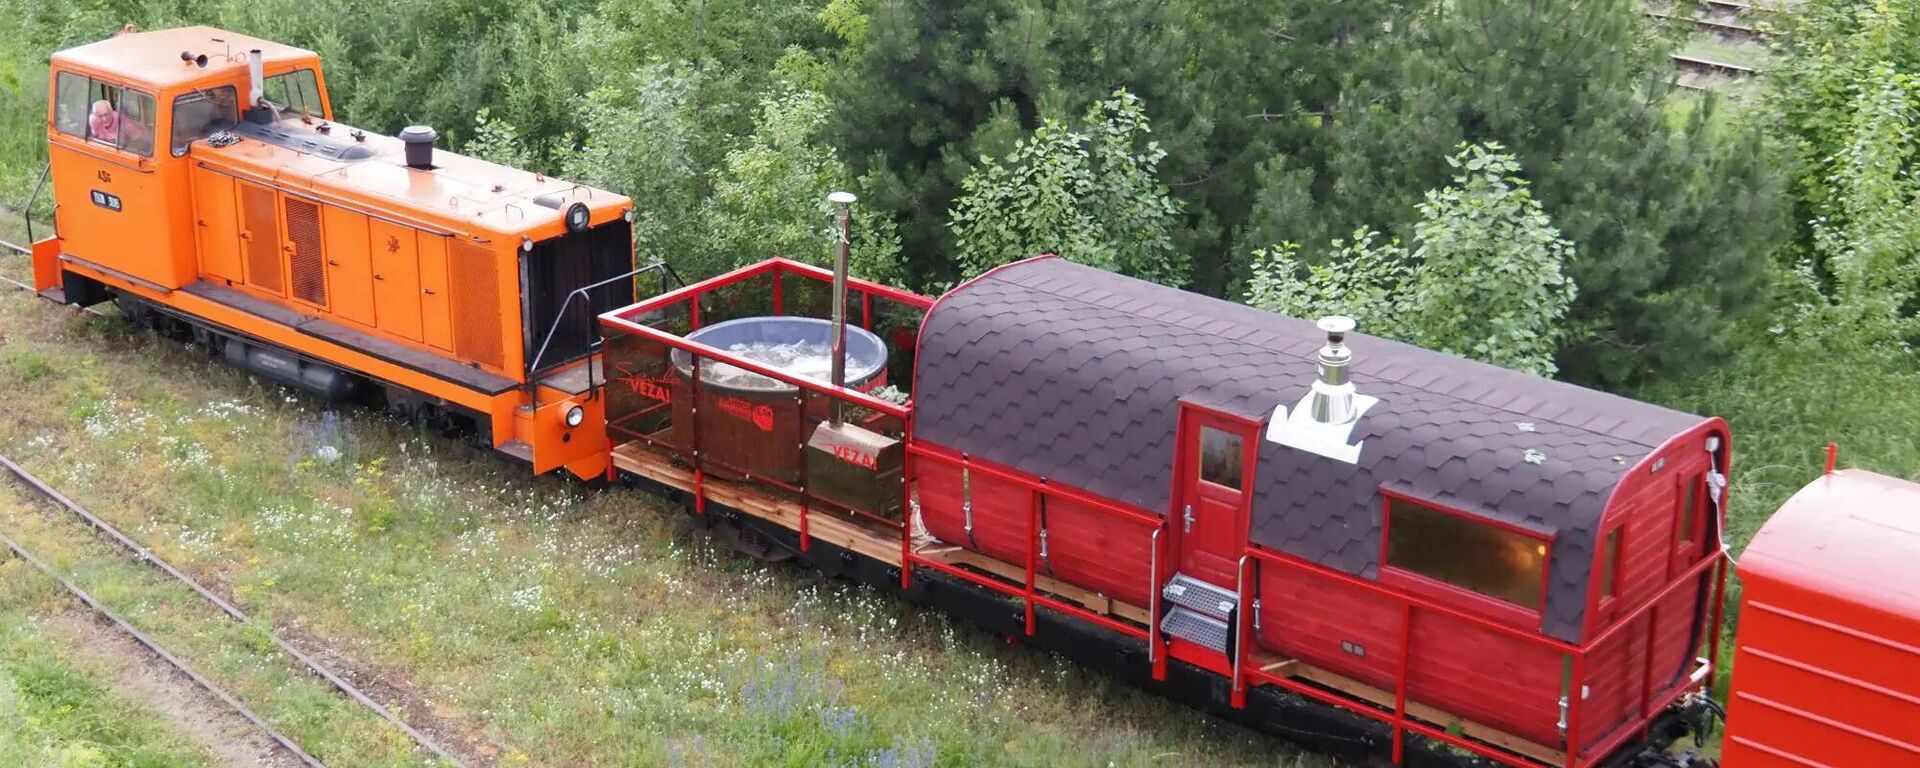 Железнодорожный вагон с баней в Литве - Sputnik Литва, 1920, 20.08.2022